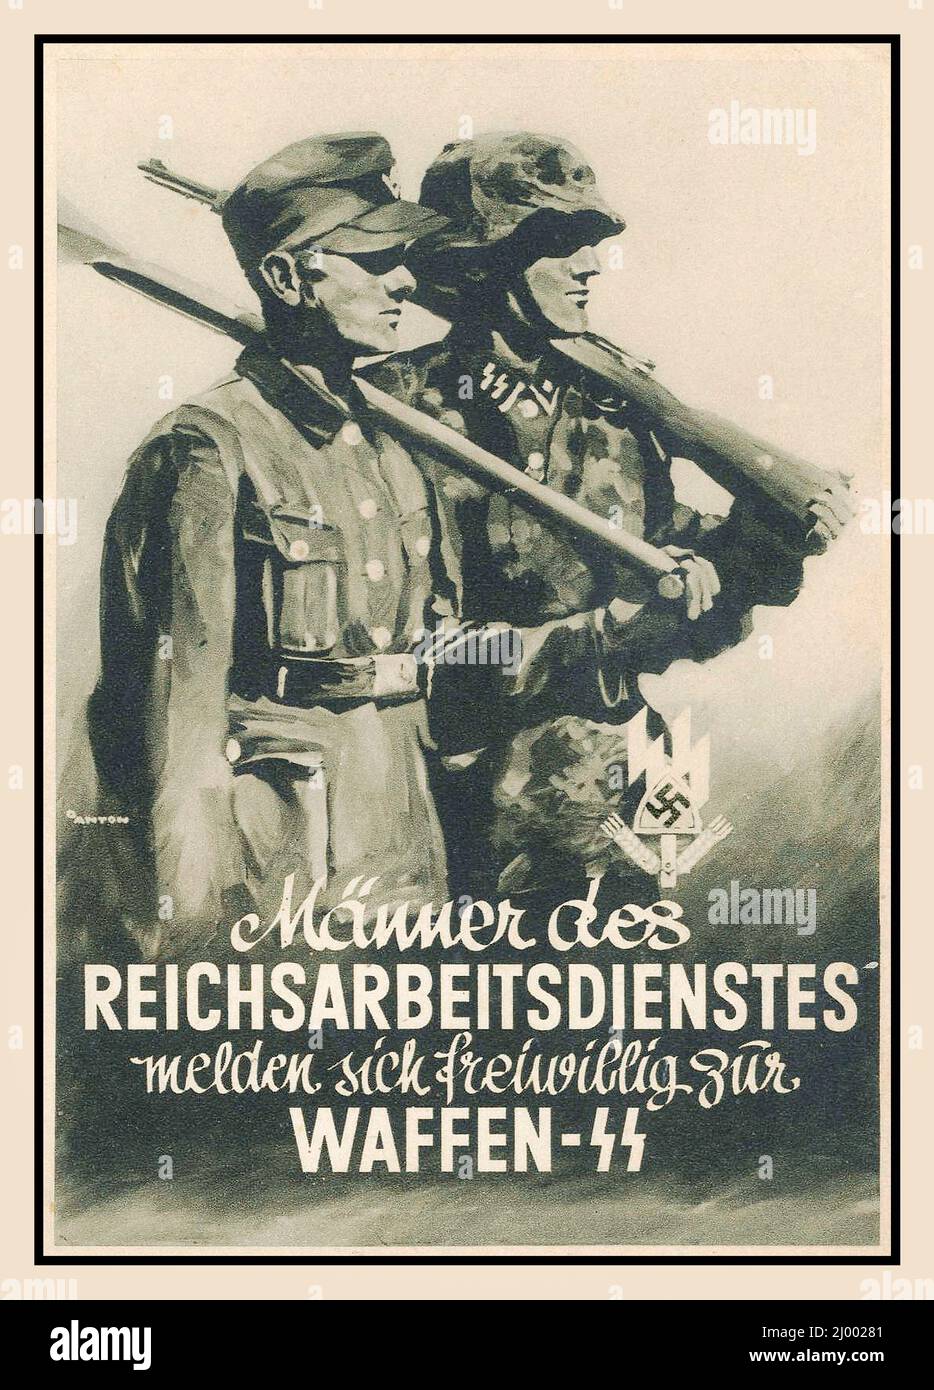 1942 Nazi Vintage Poster Propaganda Recruitment German male volunteers working in service voluntarily to the Nazi Waffen SS 1942 MÄNNER DES REICHSARBEITSDIENSTES MELDEN SICH FREIWILLIG ZUR WAFFEN-SS World War II Second World War WW2 Stock Photo